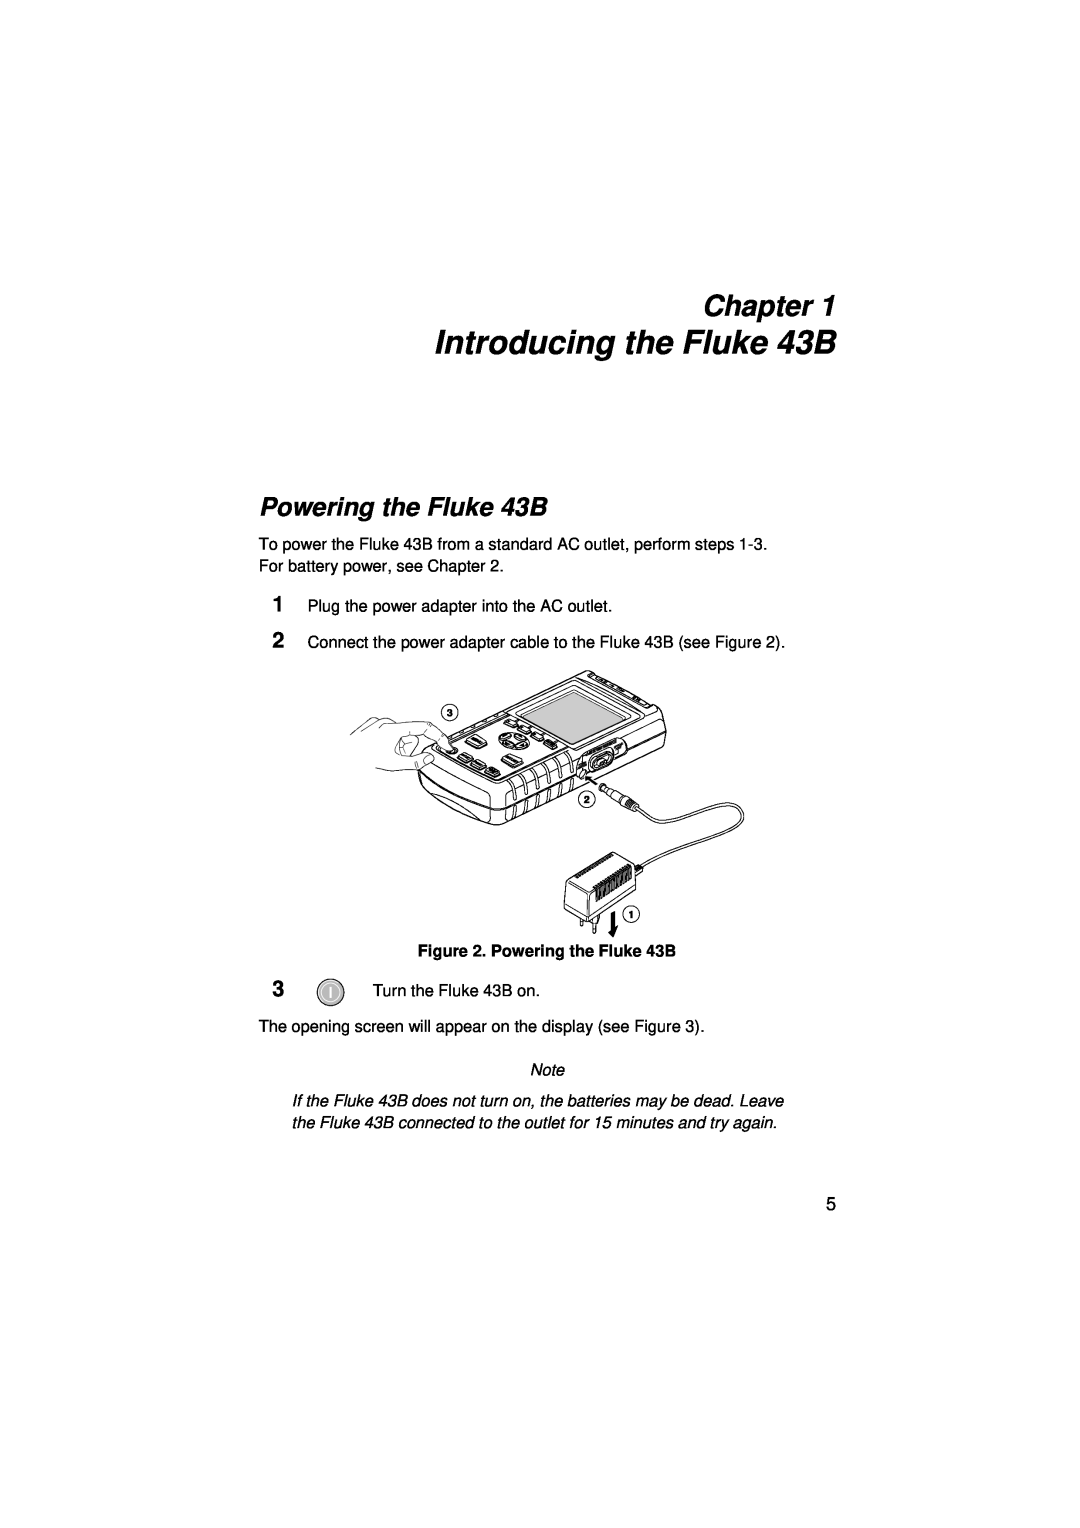 Fluke user manual Introducing the Fluke 43B, Chapter, Powering the Fluke 43B 